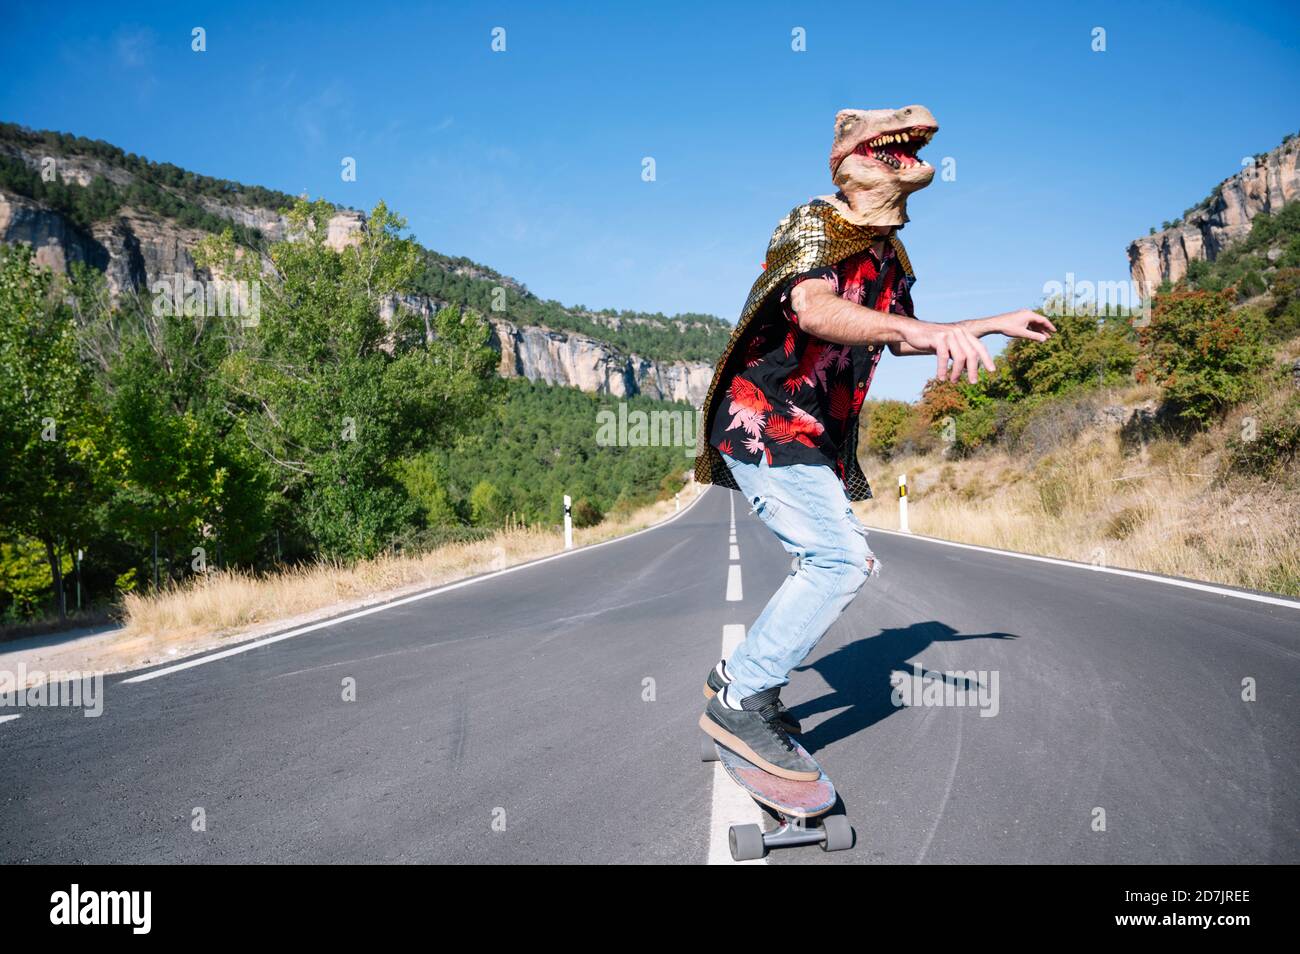 Homme portant un masque de dinosaure skate sur la route contre un ciel dégagé Banque D'Images